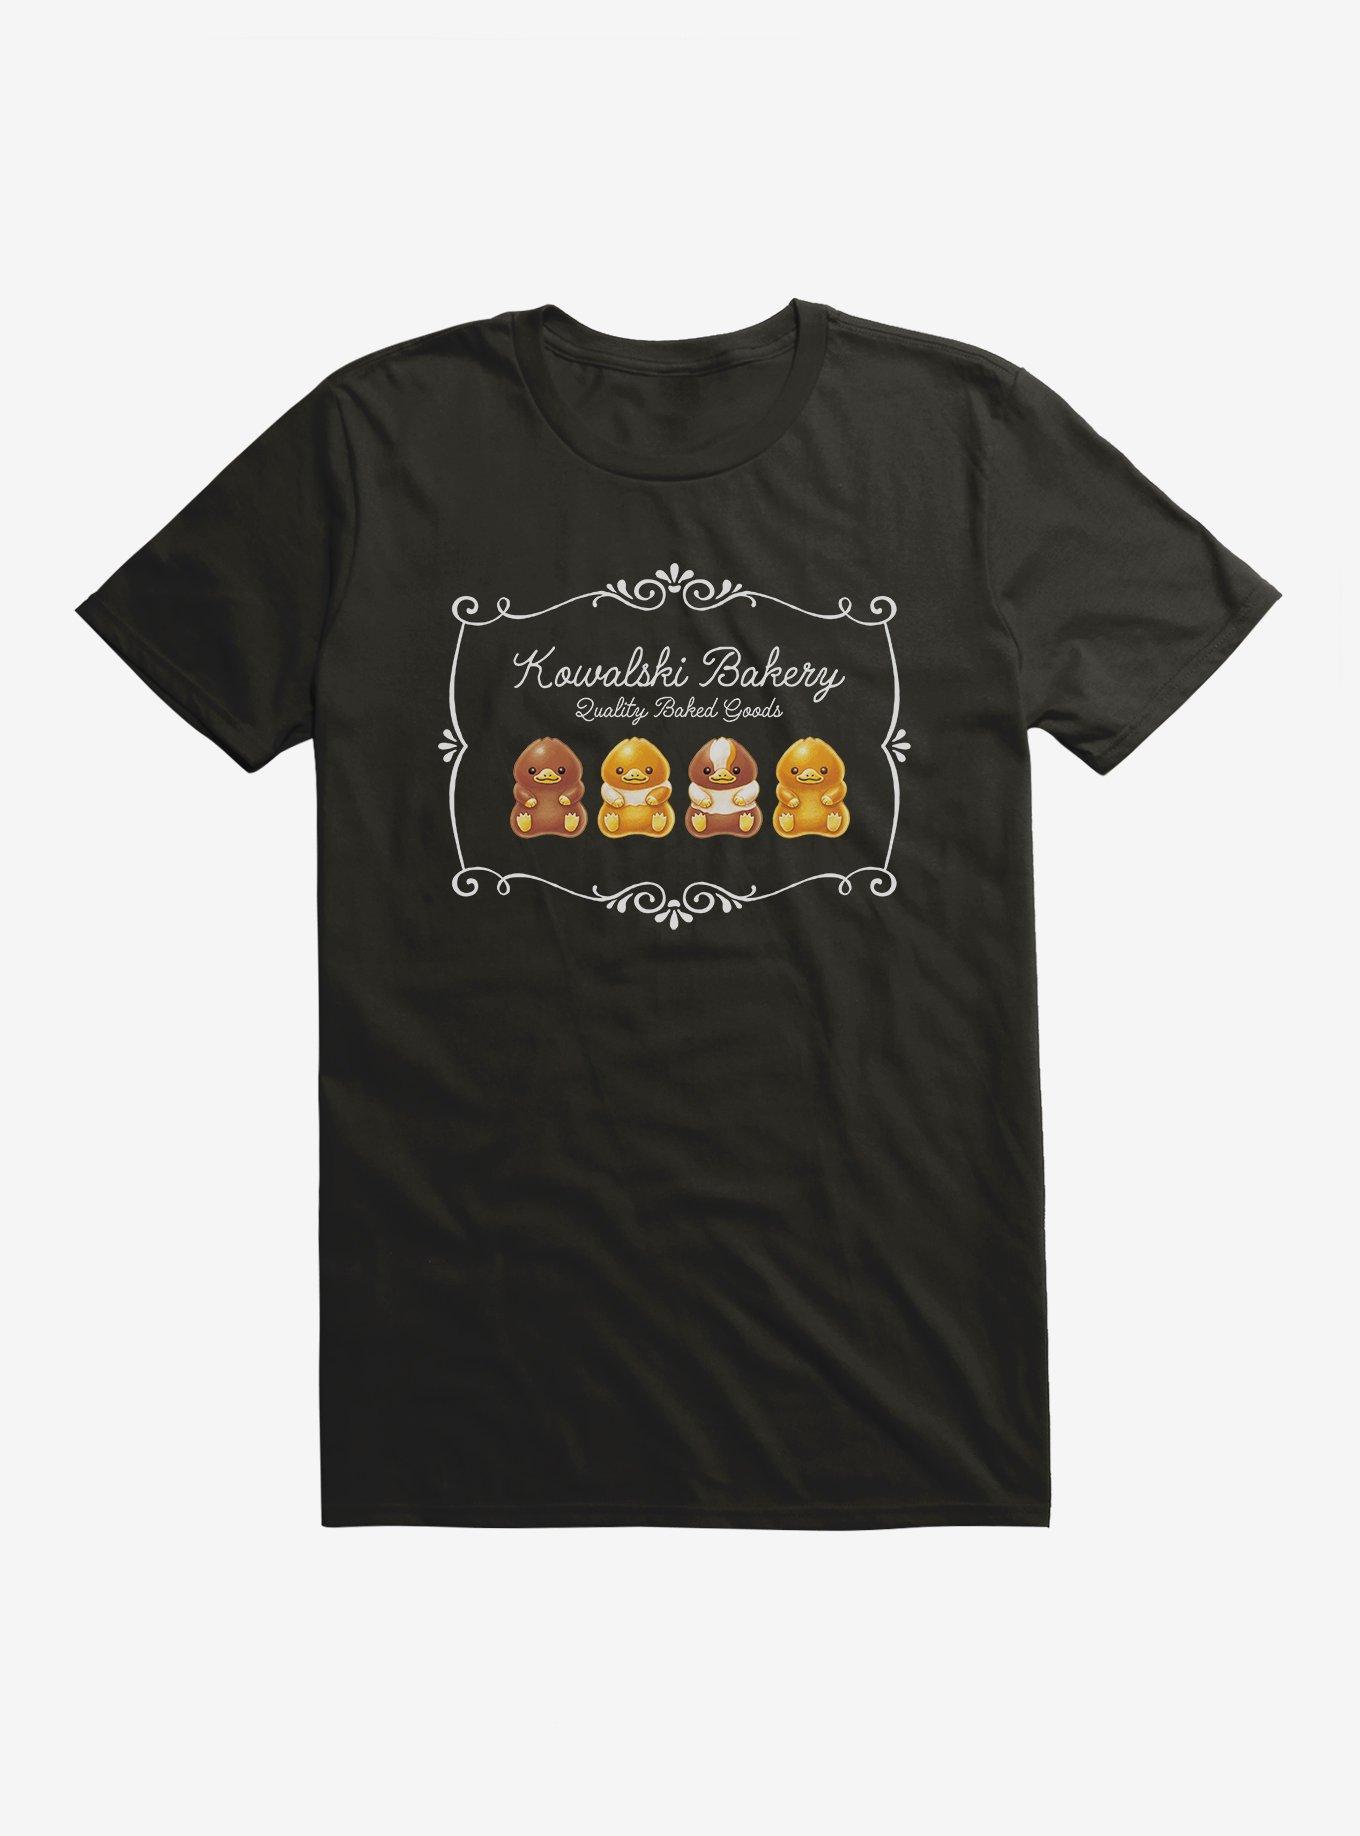 Fantastic Beasts Baby Nifflers T-Shirt